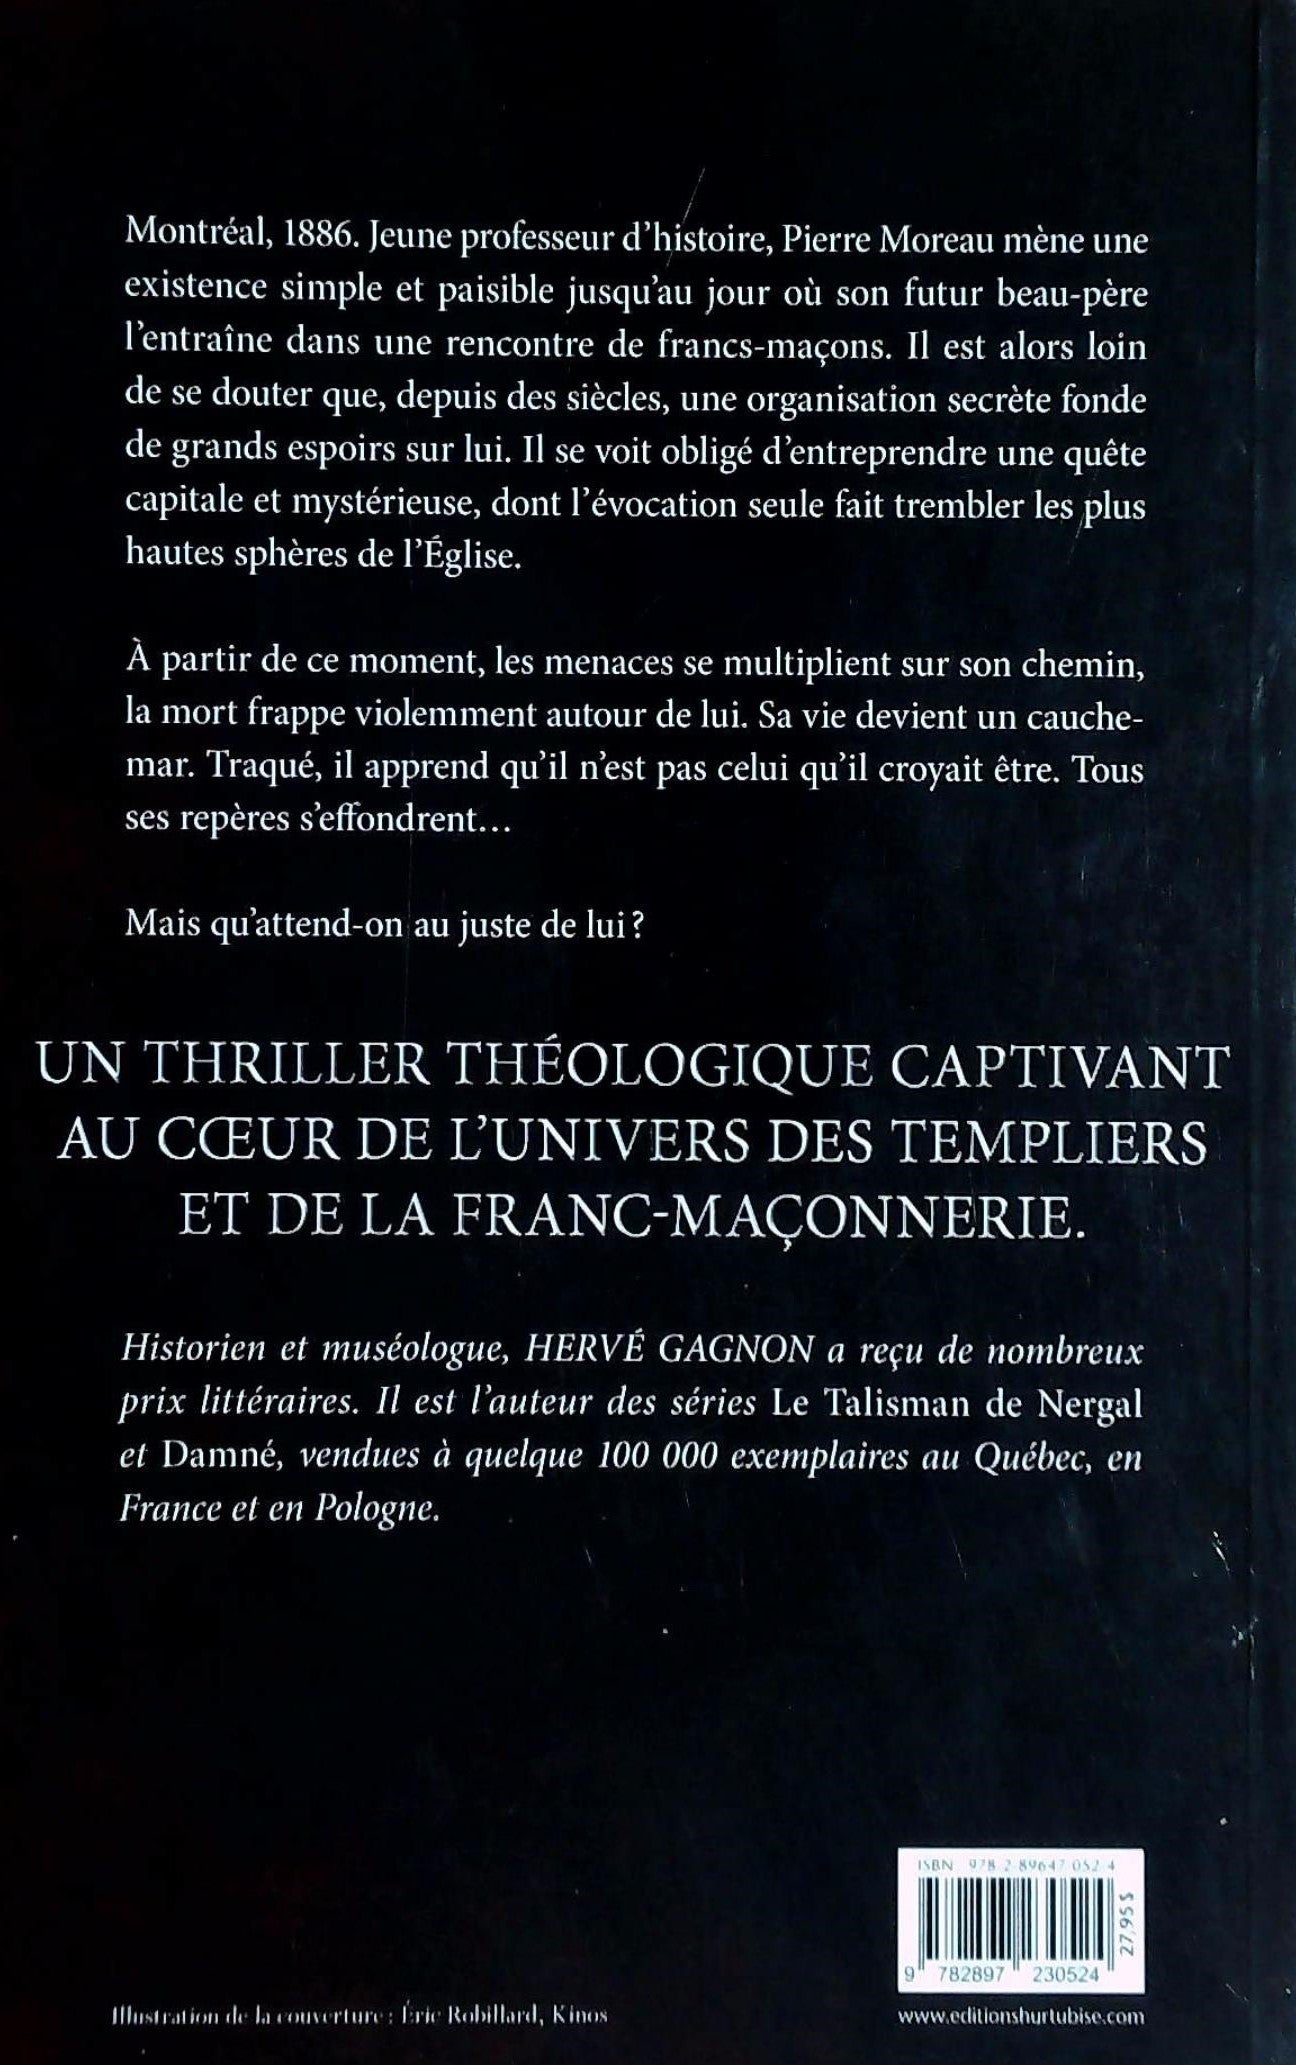 Vengeance # 1 : Le glaive de Dieu (Hervé Gagnon)